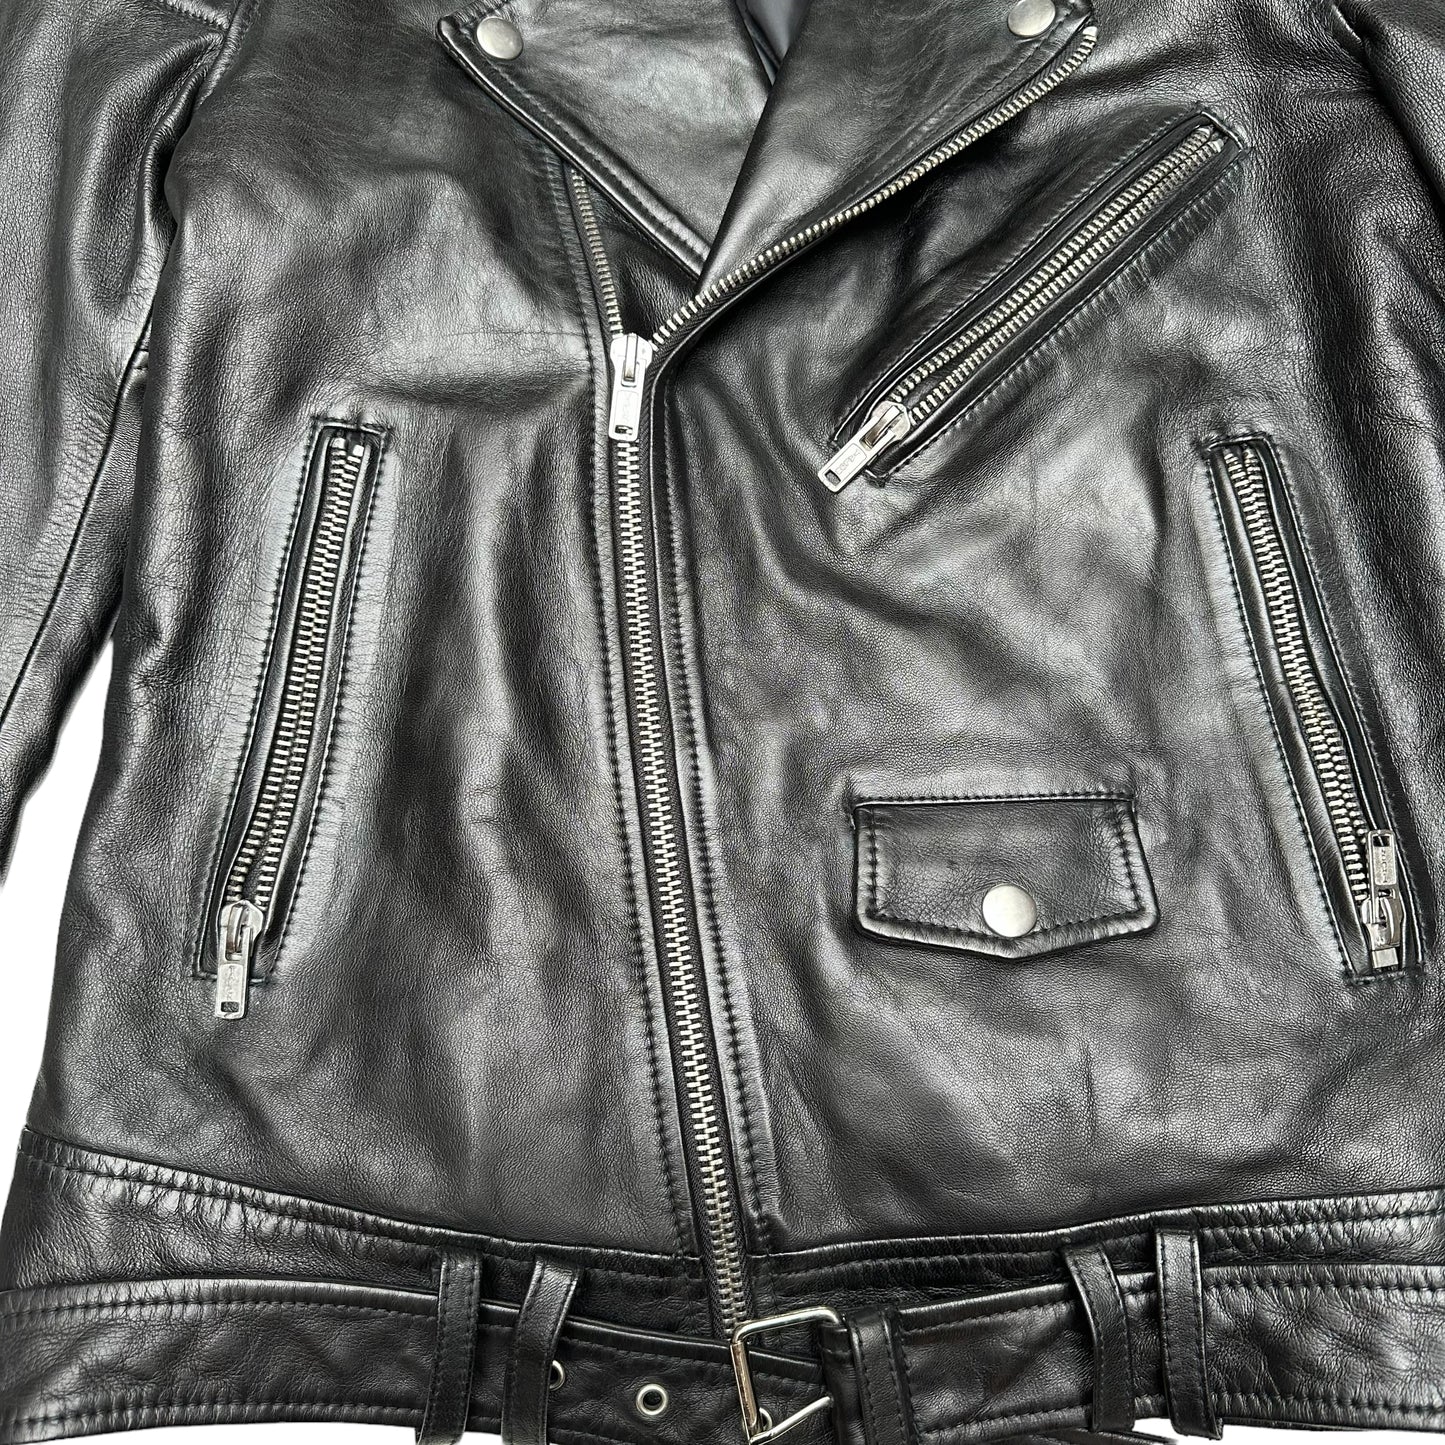 Black Biker Leather Jacket - M